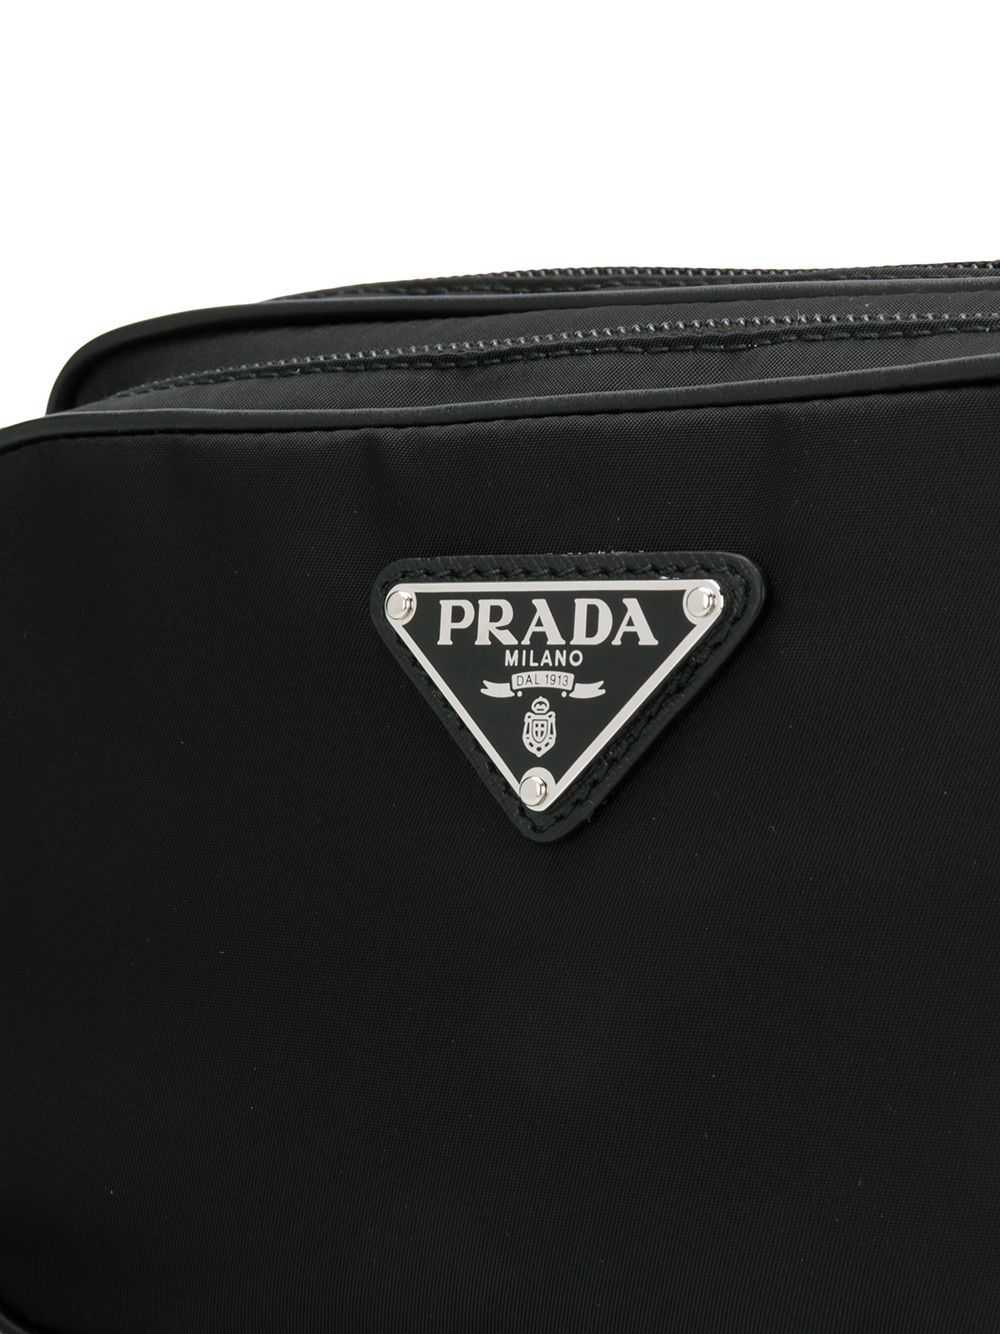 фото Prada поясная сумка с логотипом